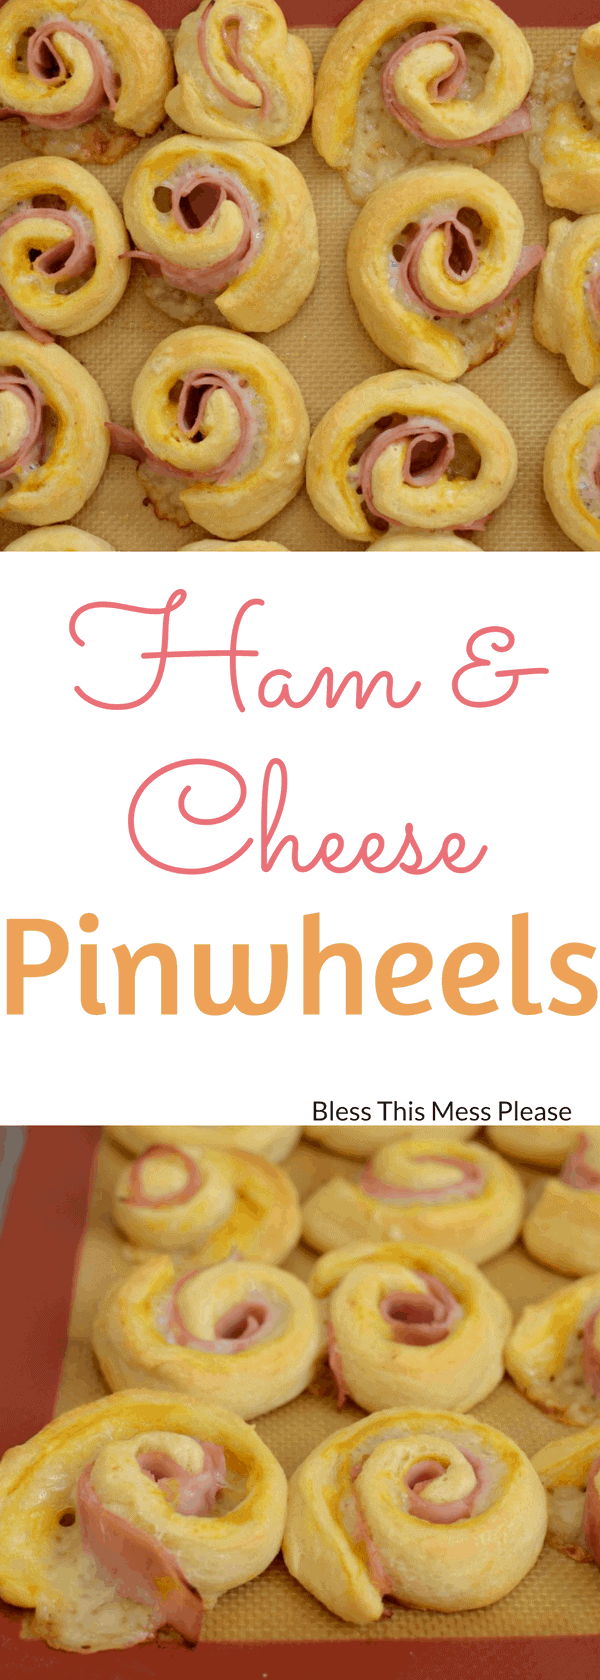 Ham and Cheese Pinwheels